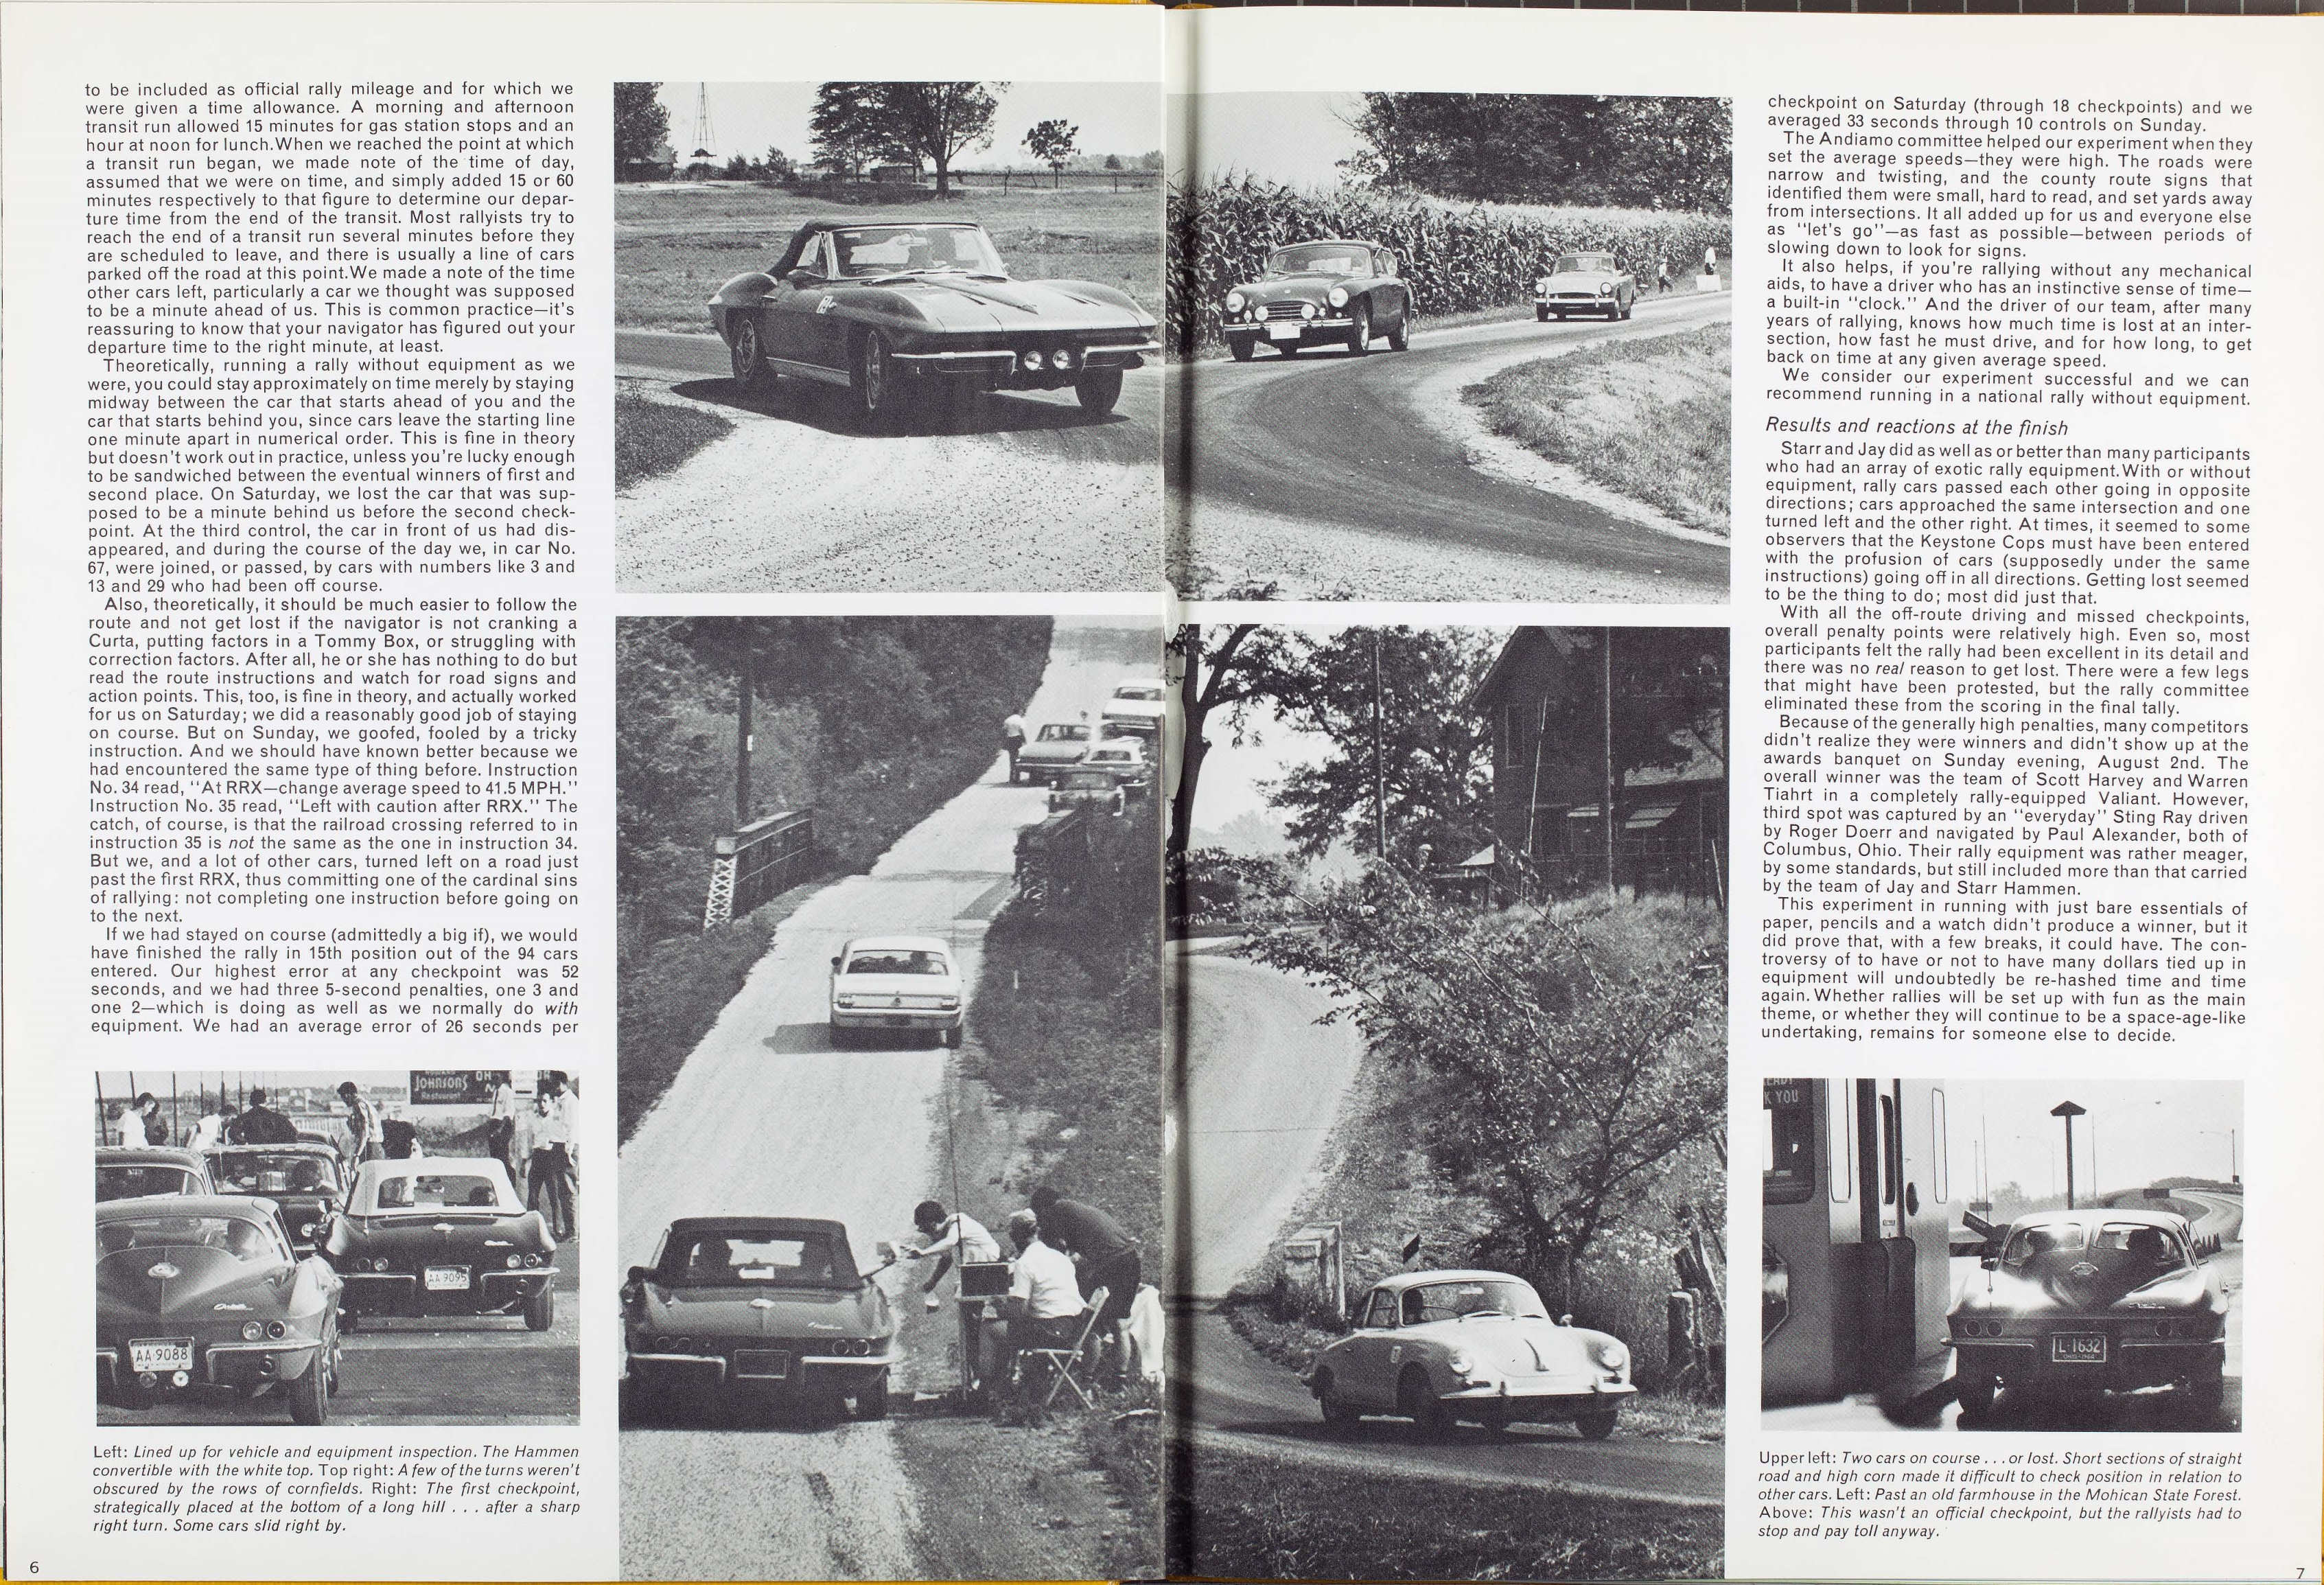 1965_Corvette_News_V8-1-06-07